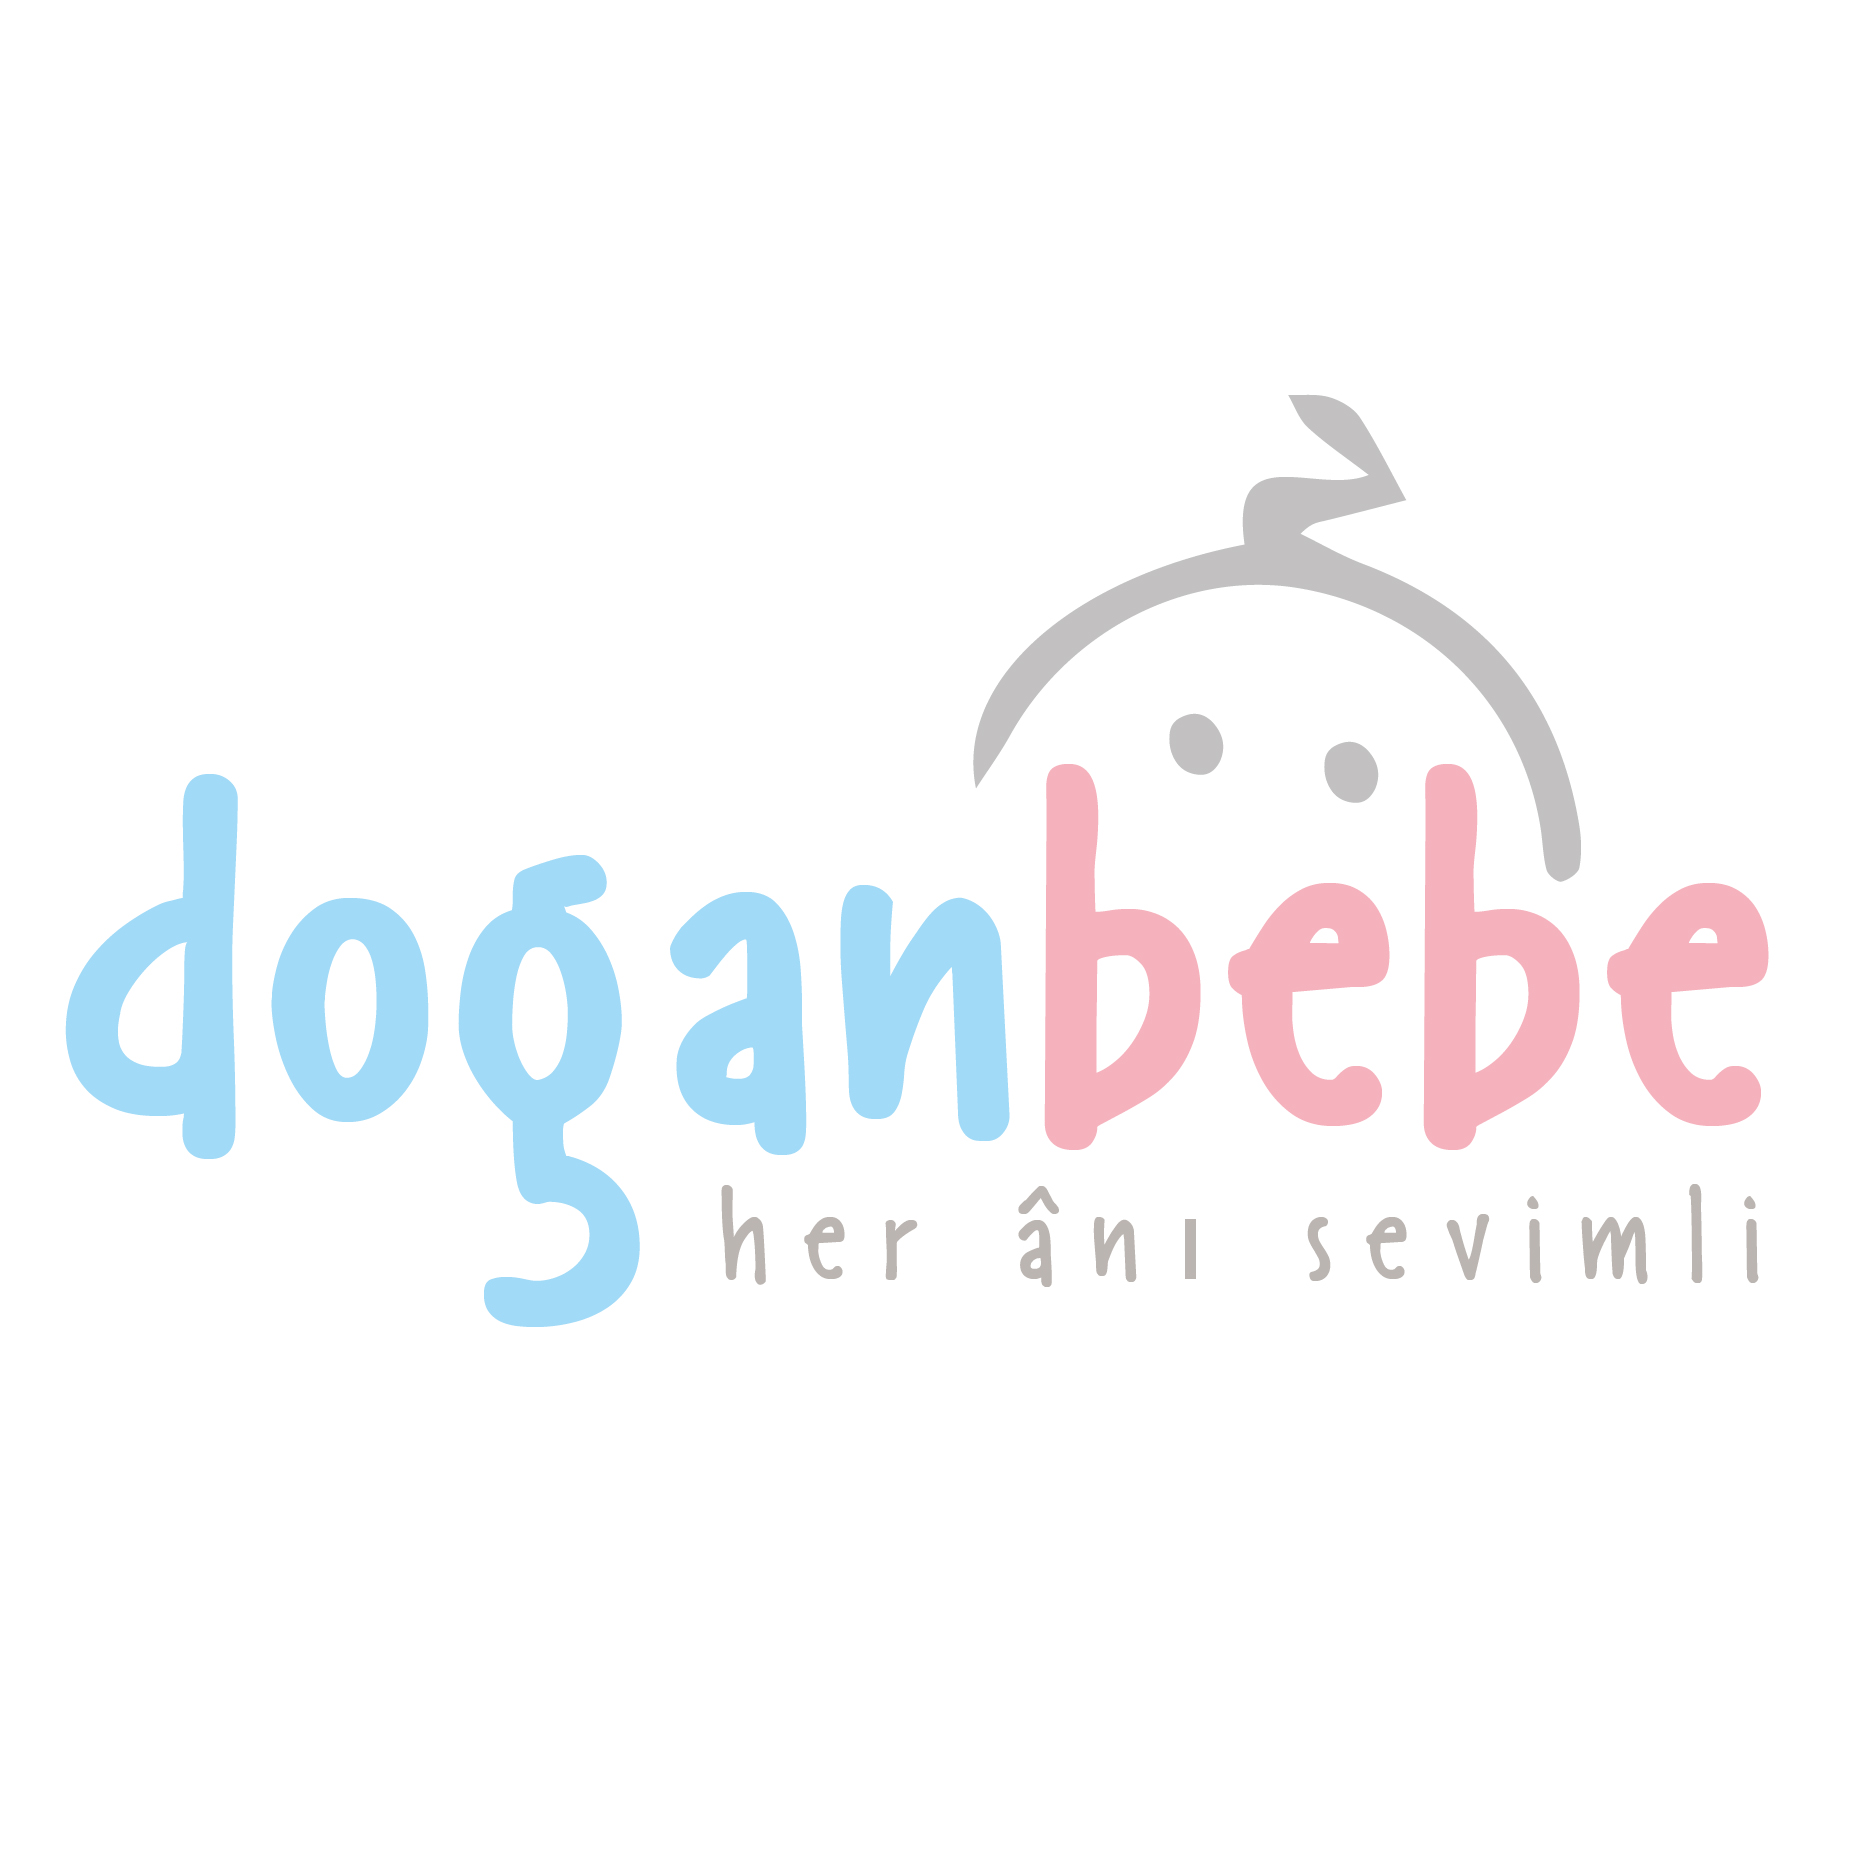 Doganbebe